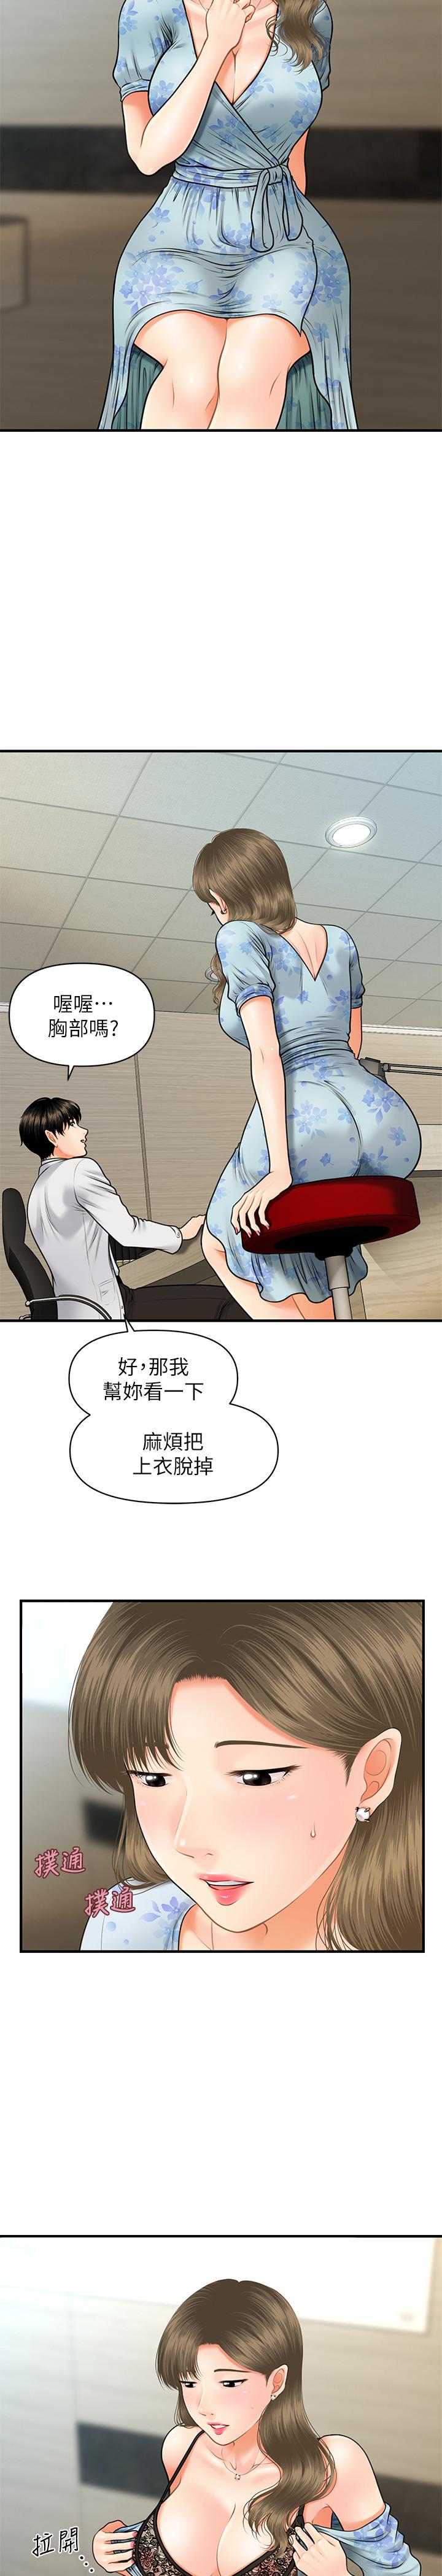 韩国污漫画 醫美奇雞 第5话-在诊间发生的羞羞事 29